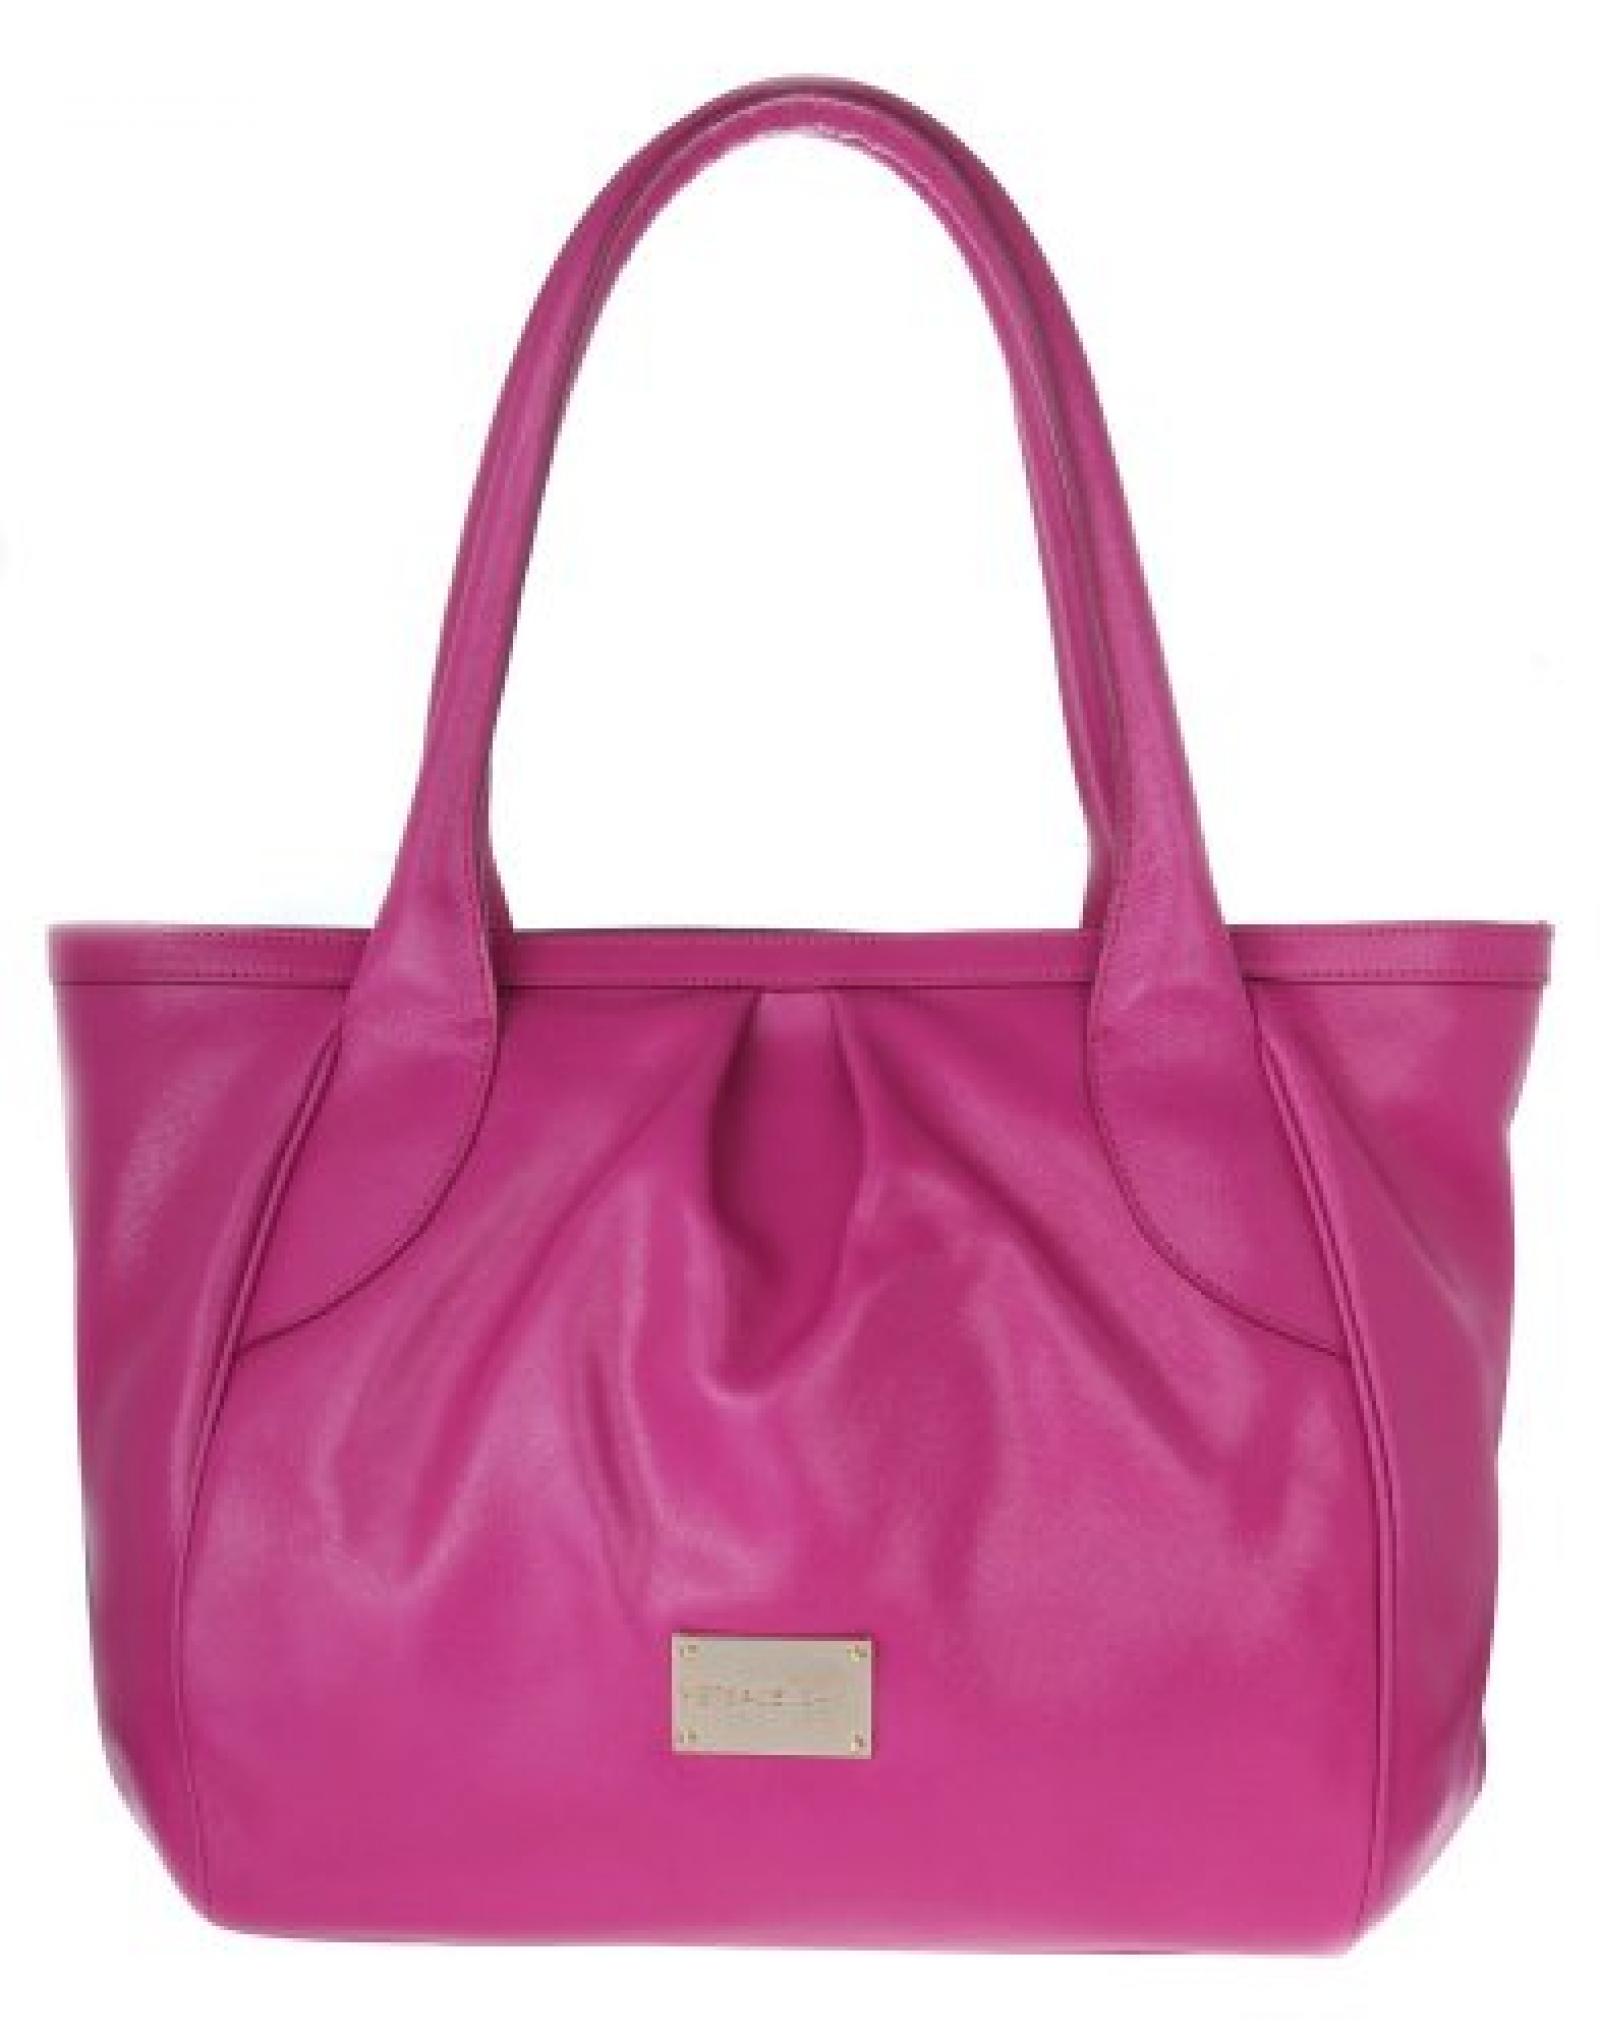 Versace Jeans Damen Shopper Tote bag Pink E1VFBB63 